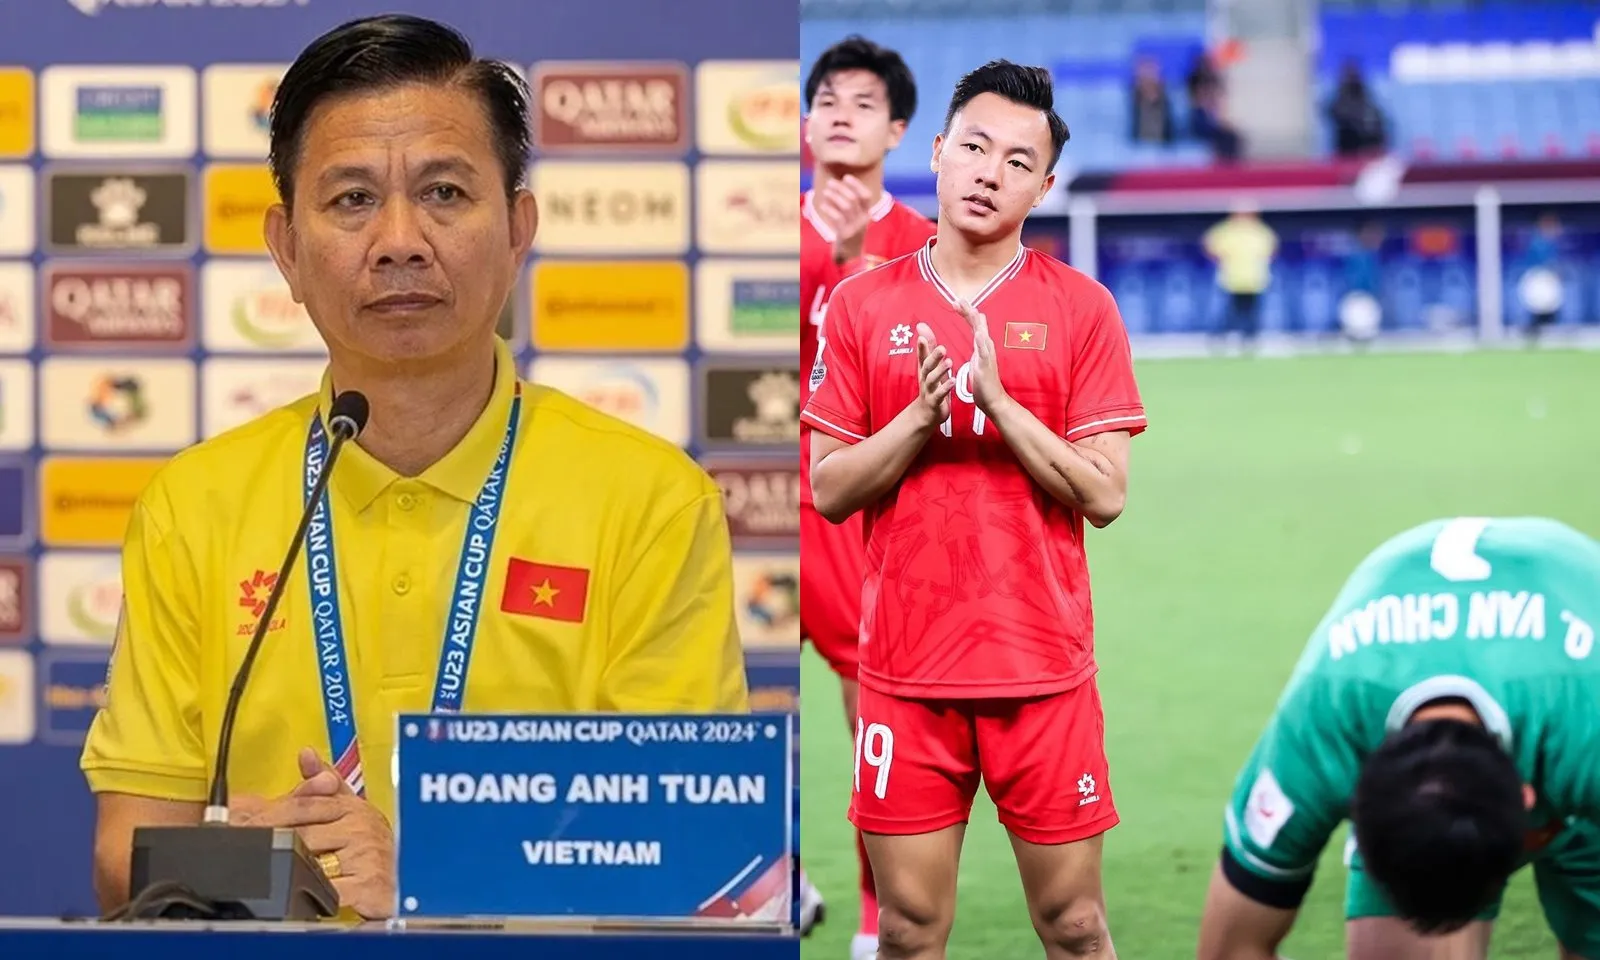 HLV Hoàng Anh Tuấn: “Thật tiếc khi U23 Việt Nam chỉ thua vì 1 quả phạt đền” 